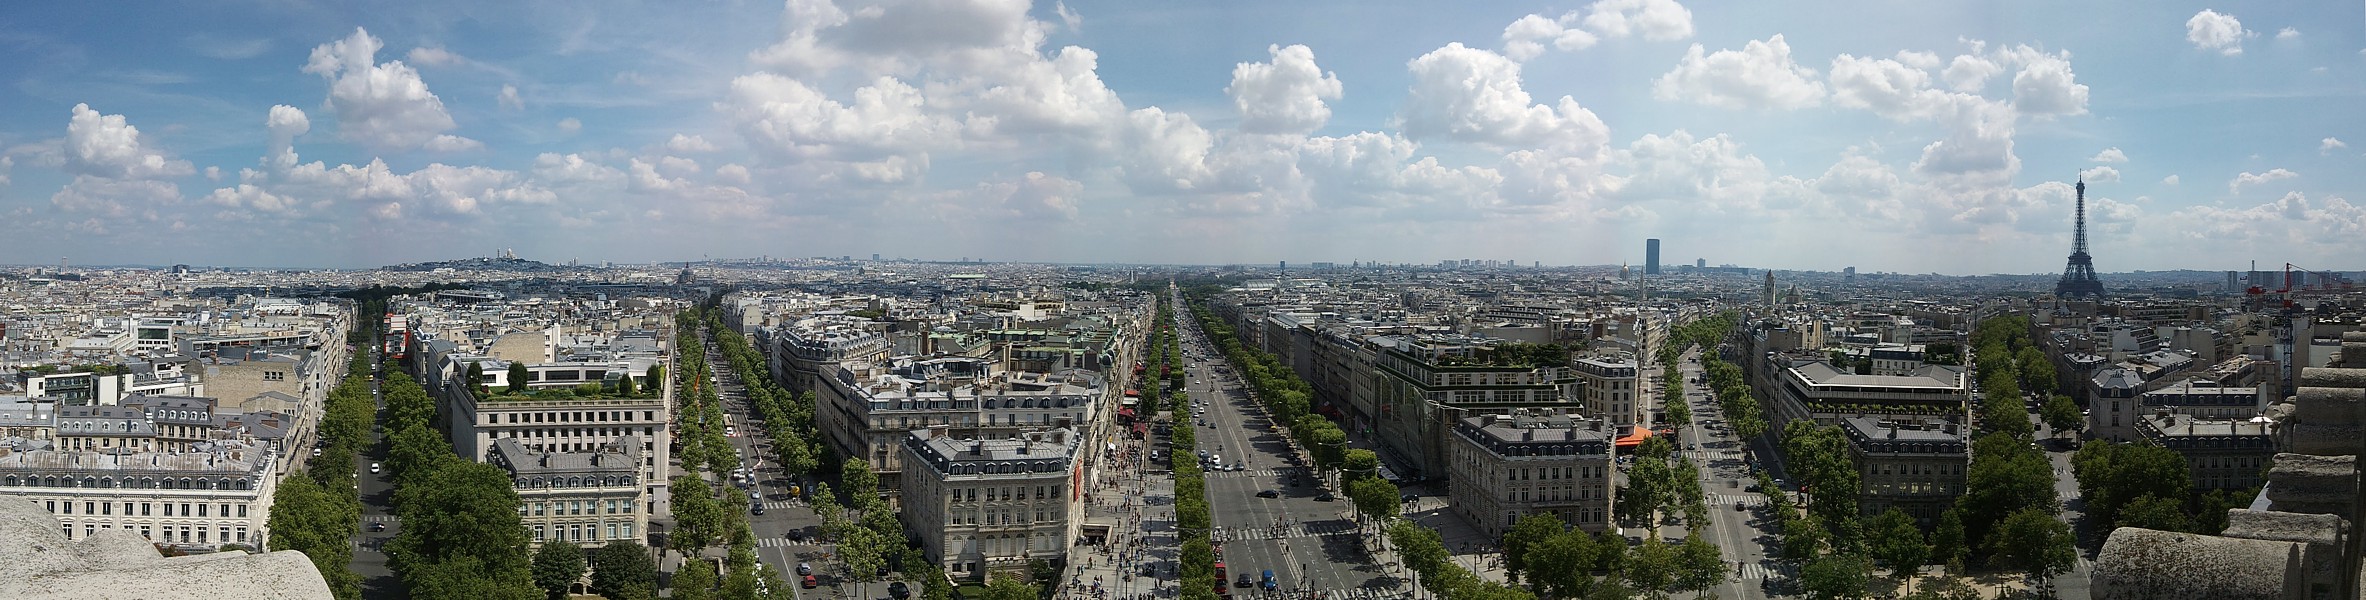 Panorama z łuku triumfalnego
L'Arc de Triomphe
[i]Photo by G.W.[/i]
Słowa kluczowe: Paryż,panorama,budynek